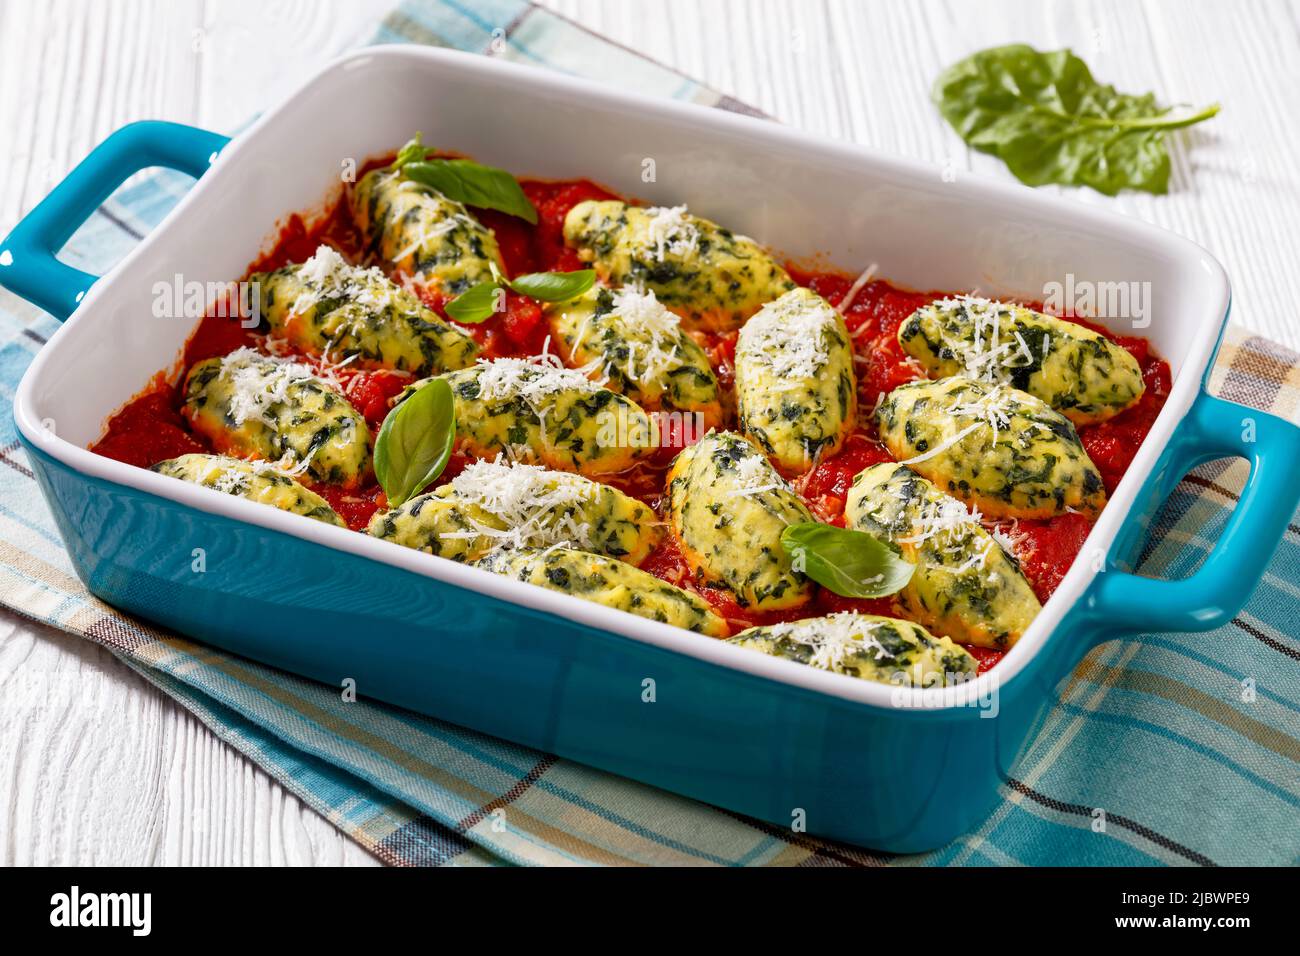 Boulettes de ricotta aux épinards italiens dans une sauce tomate aux herbes et parmesan râpé dans un plat de cuisson en céramique sur une table blanche Banque D'Images